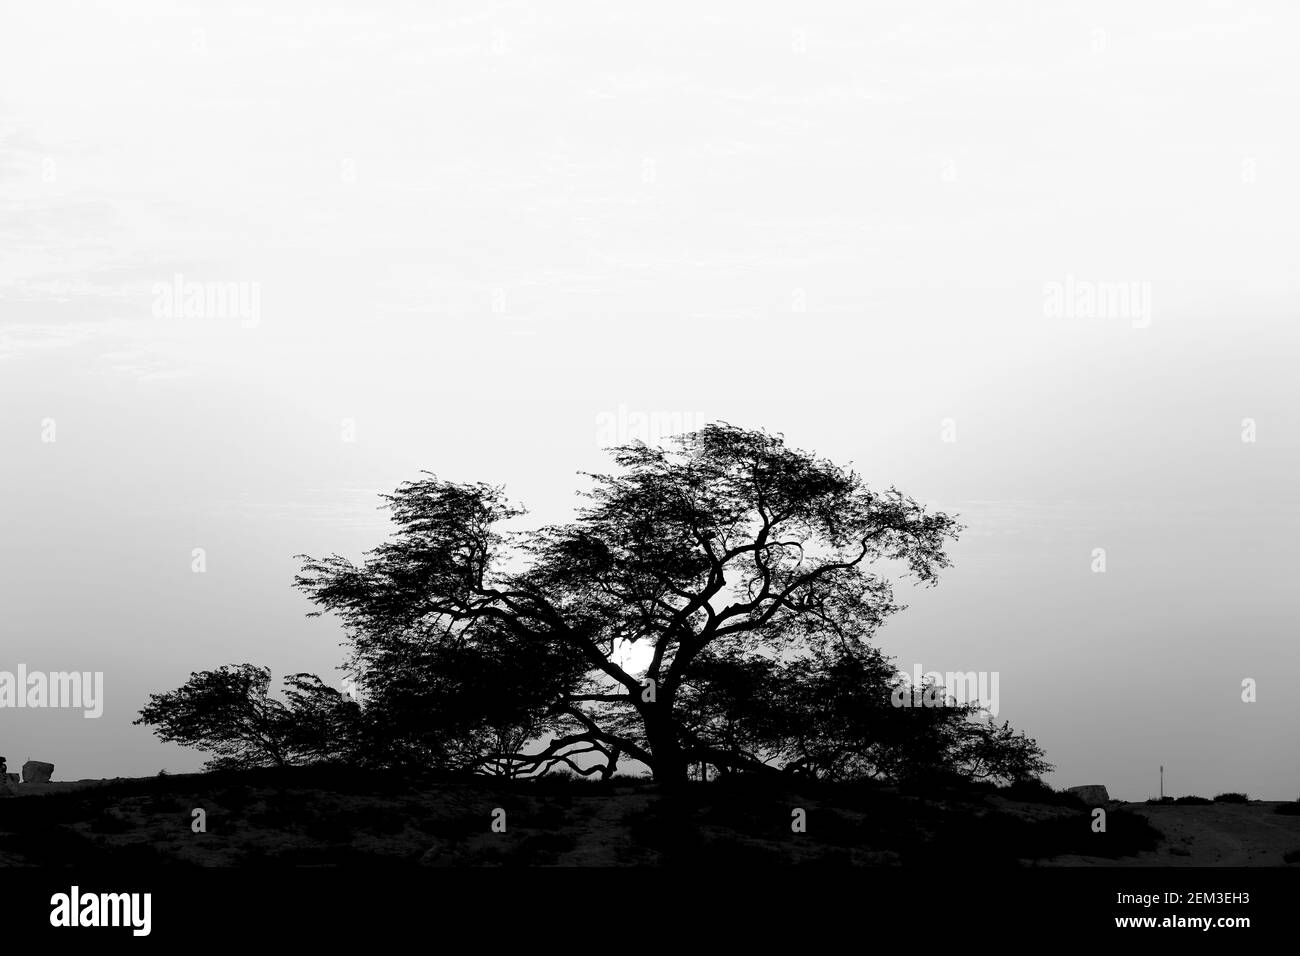 Monochrom, schwarz-weiß, Bild des Lebensbaums (Prosopis cineraria) bei Sonnenuntergang, Königreich Bahrain Stockfoto